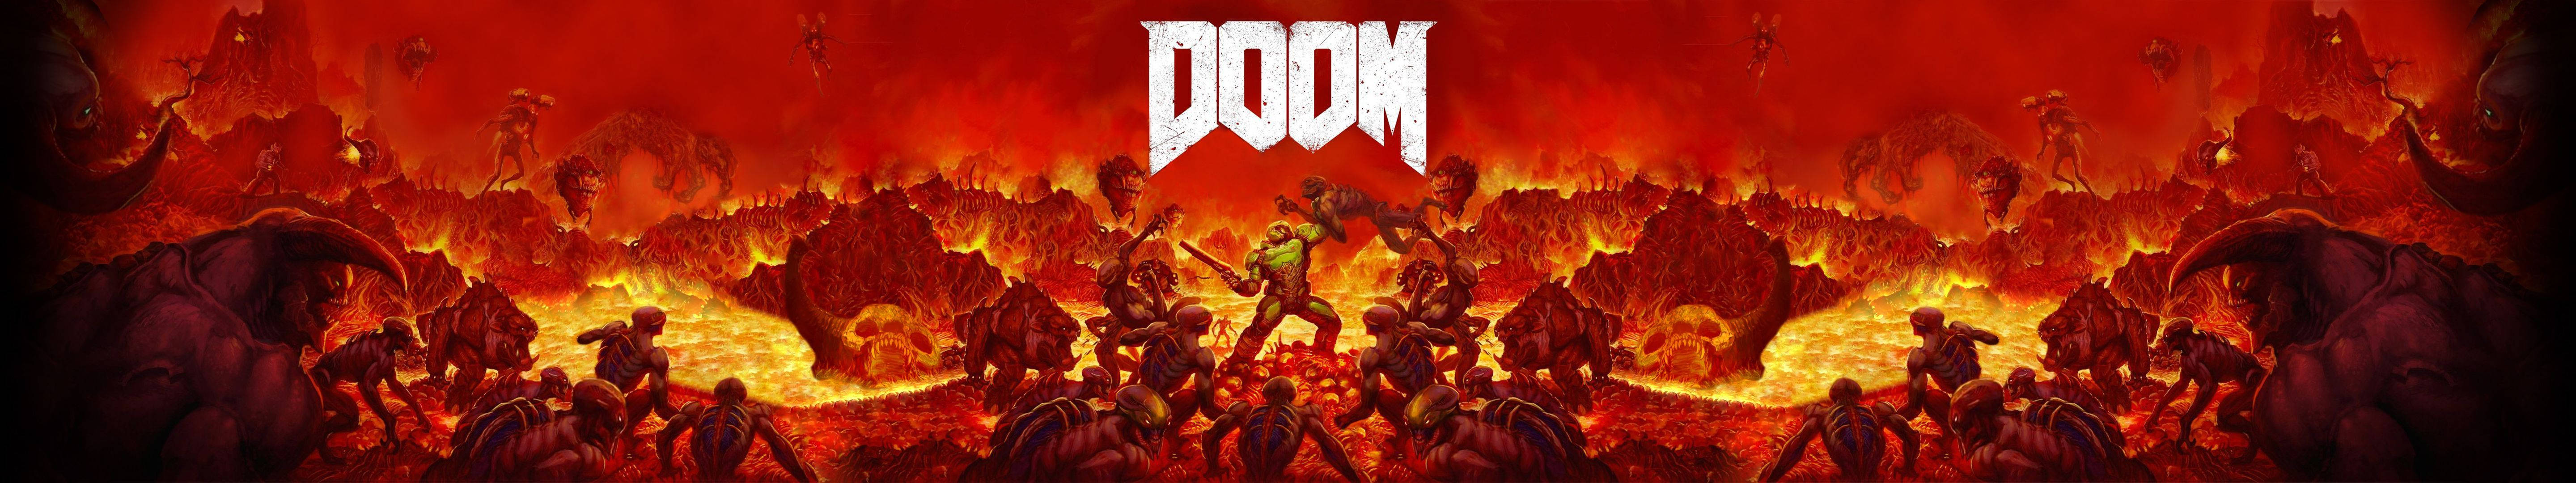 Doom Game